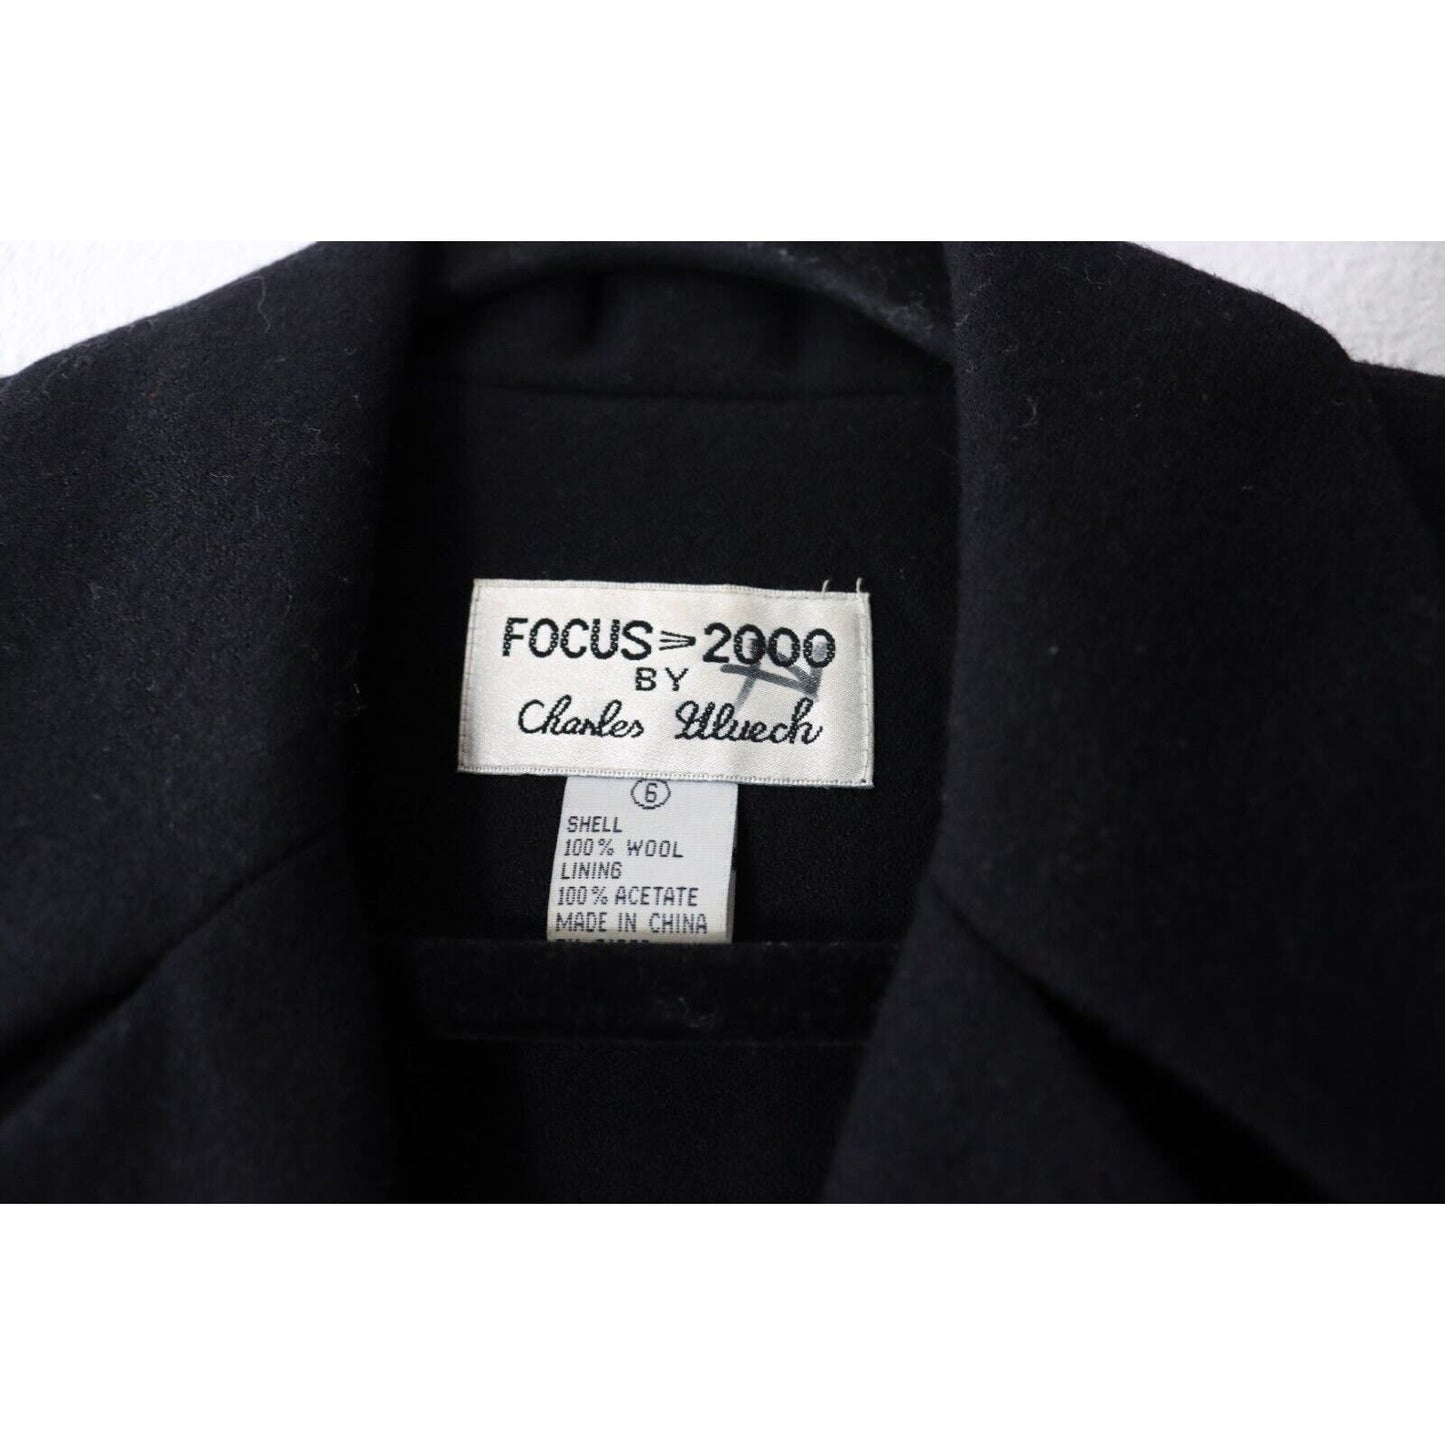 Vintage Focus 2000 By Charles Glueck Wool Jacket